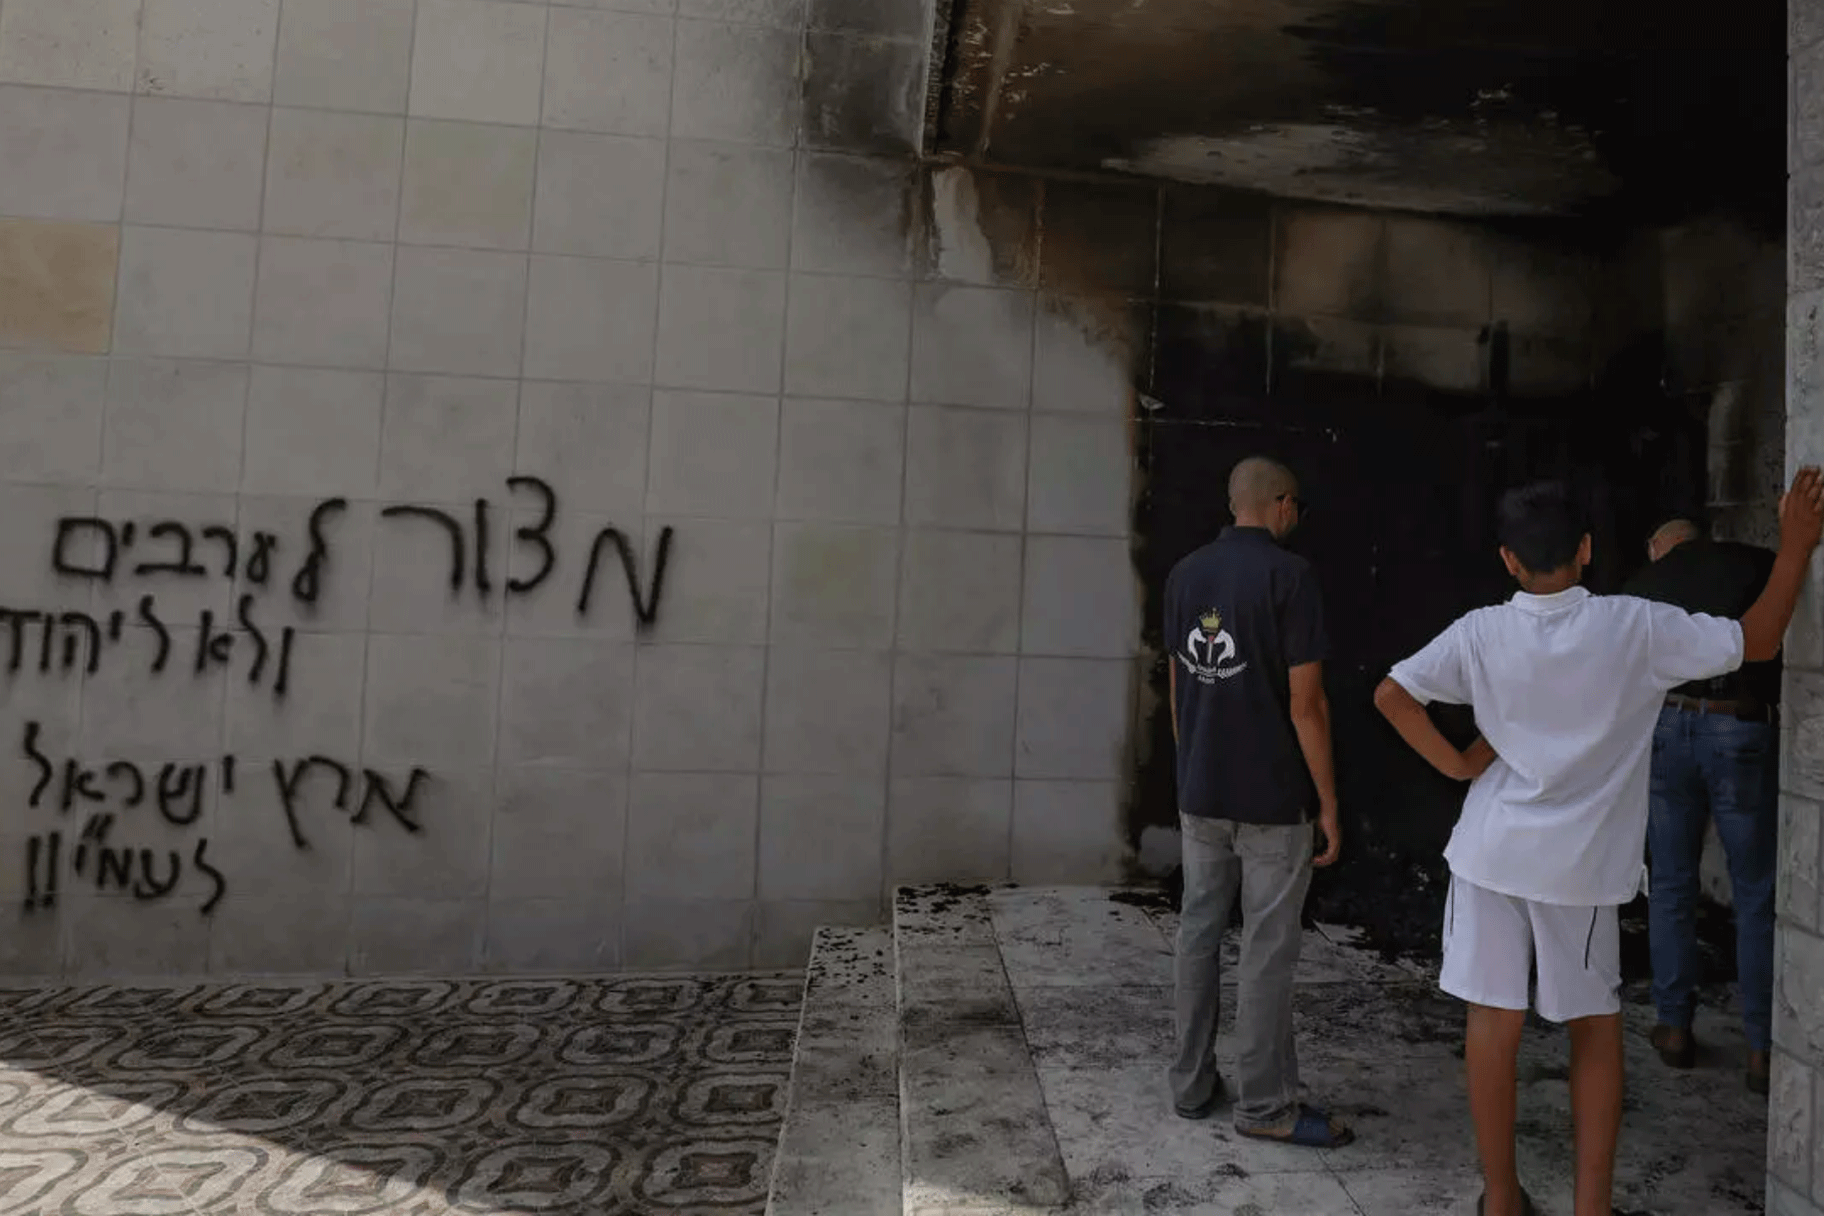 فلسطينيون يعاينون الدمار الذي خلفته نيران أشعلها مستوطنون وشعارات عنصرية خطوها عند مدخل وعلى جدران مسجد في مدينة البيرة في الضفة الغربية المحتلة في 27 يوليو 2020